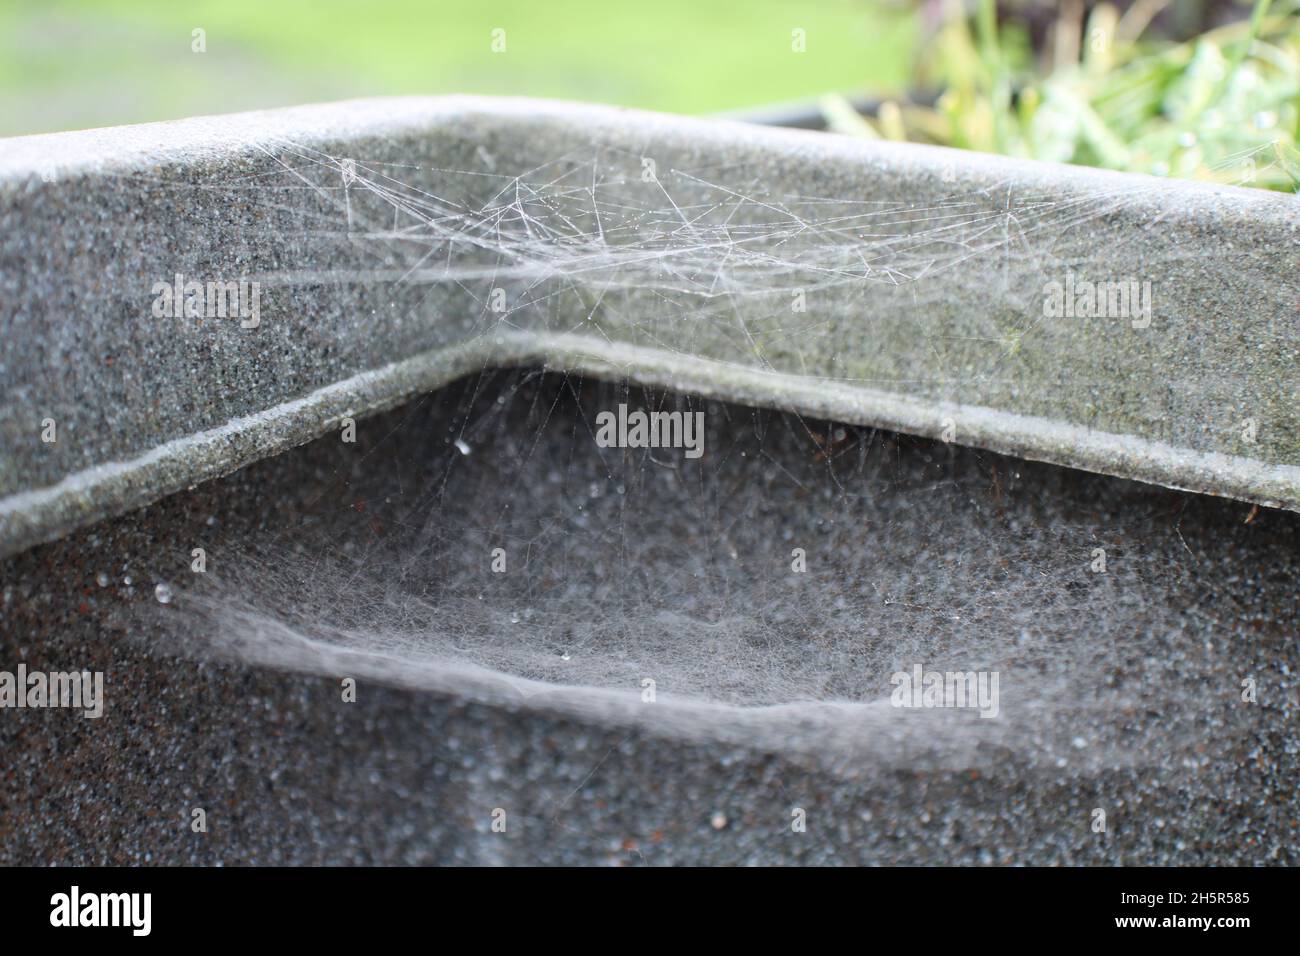 Tela de seda de araña proteinácea, tela de arañas de doble capa en la esquina de una sembradora gris Foto de stock